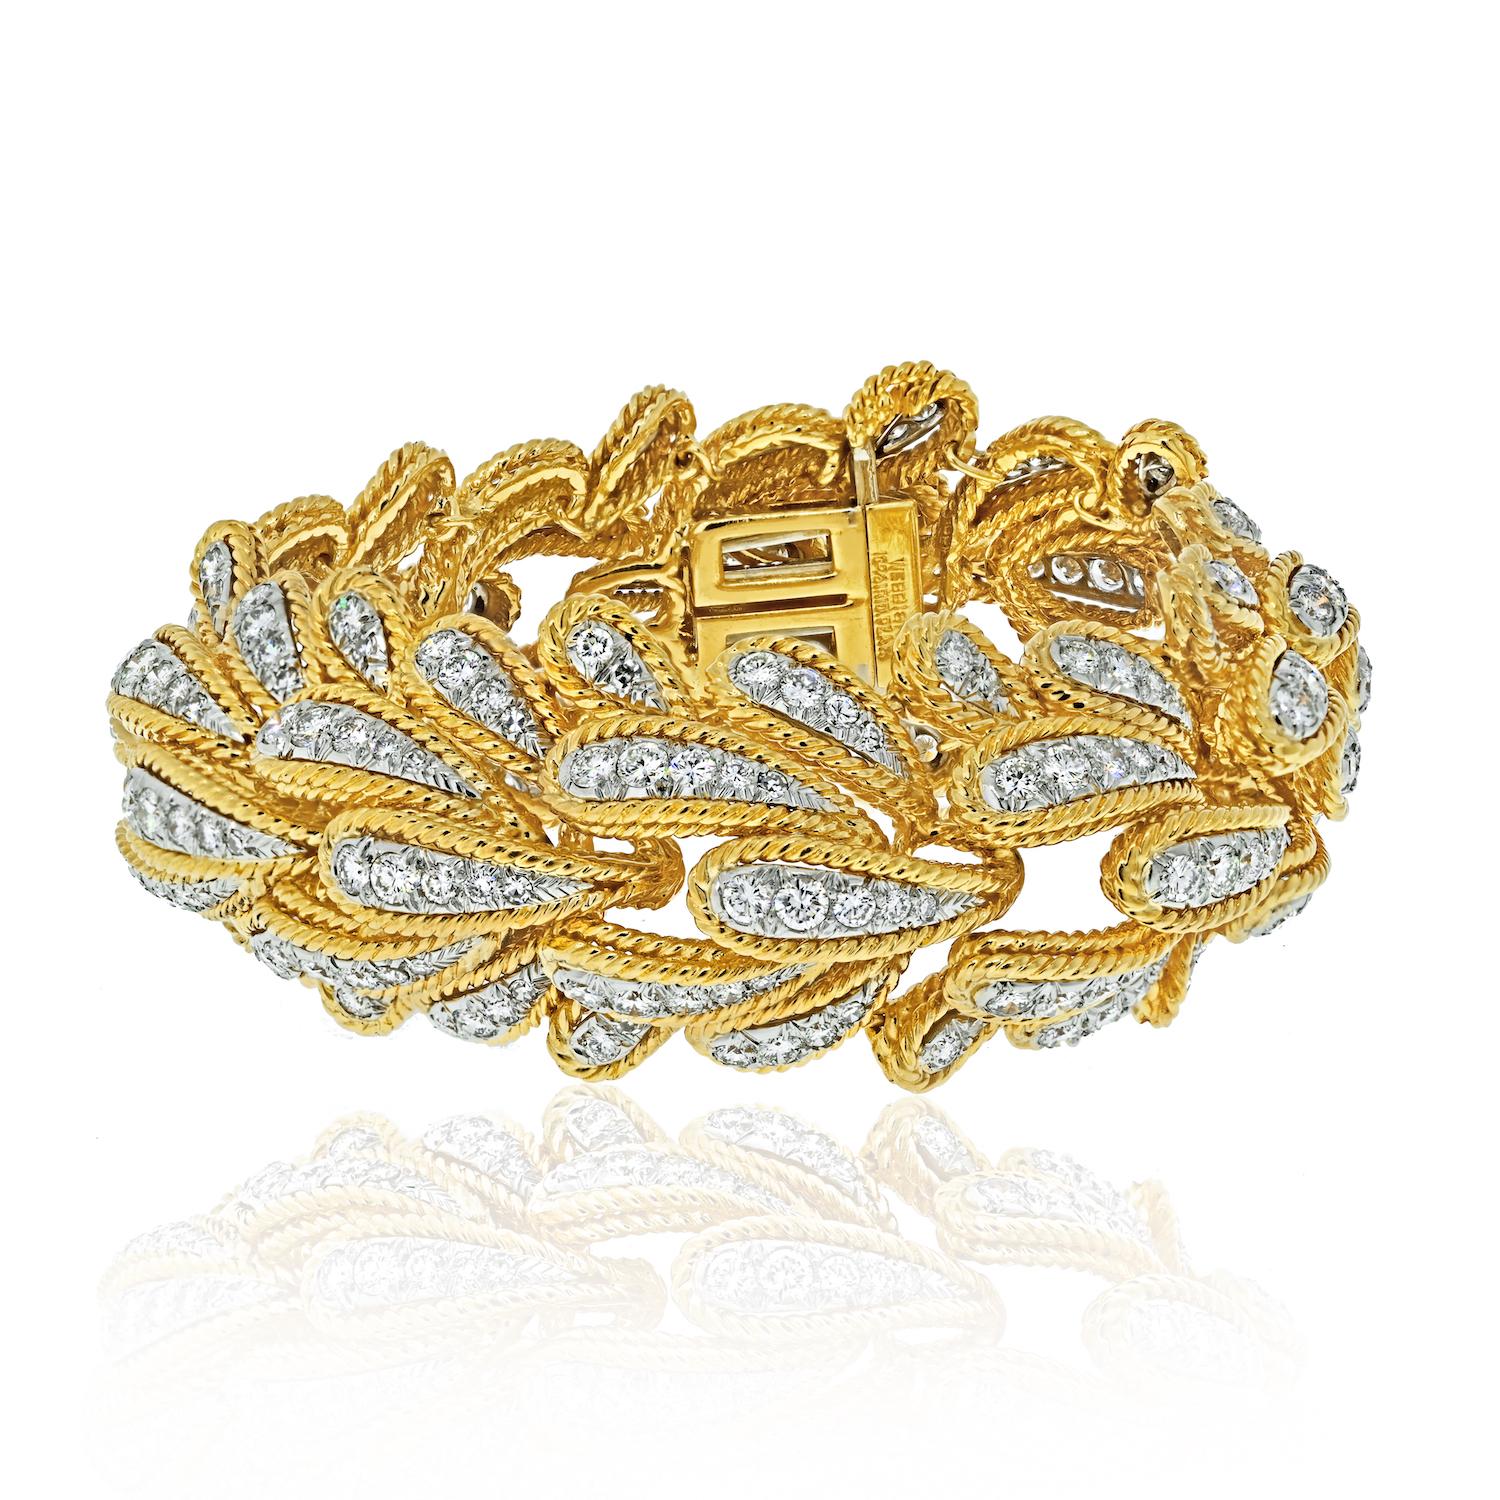 Le bracelet David Webb en platine et or jaune 18 carats 15,00cttw Bombe Diamond Leaf Motif est un bijou exquis qui respire l'élégance et le luxe. 

Réalisé avec précision, ce bracelet présente une étonnante combinaison de platine et d'or jaune 18